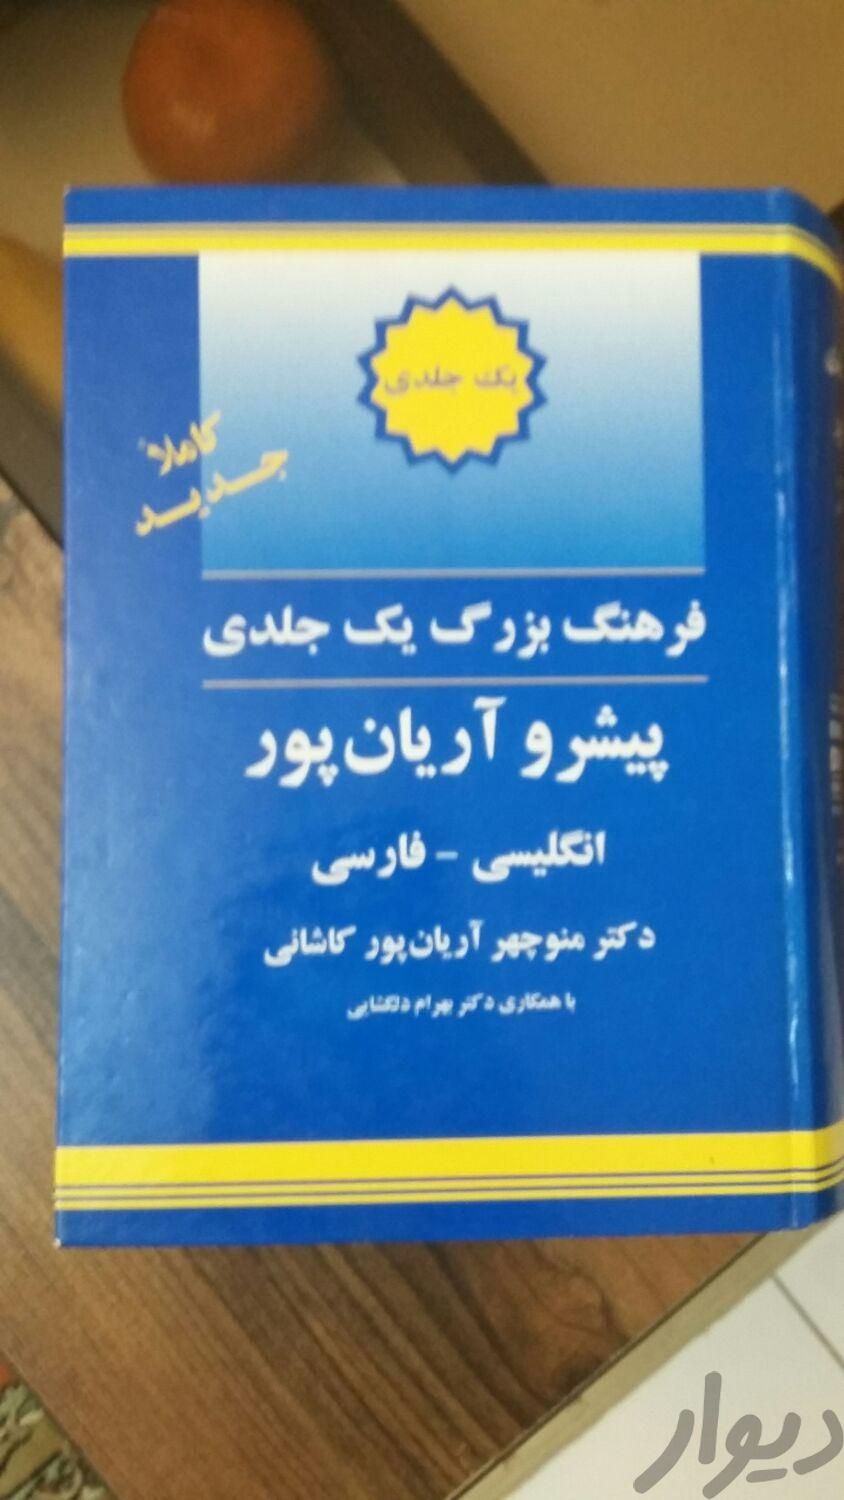 دیکشنری بزرگ آریانپور|کتاب و مجله آموزشی|تهران, تهرانپارس غربی|دیوار